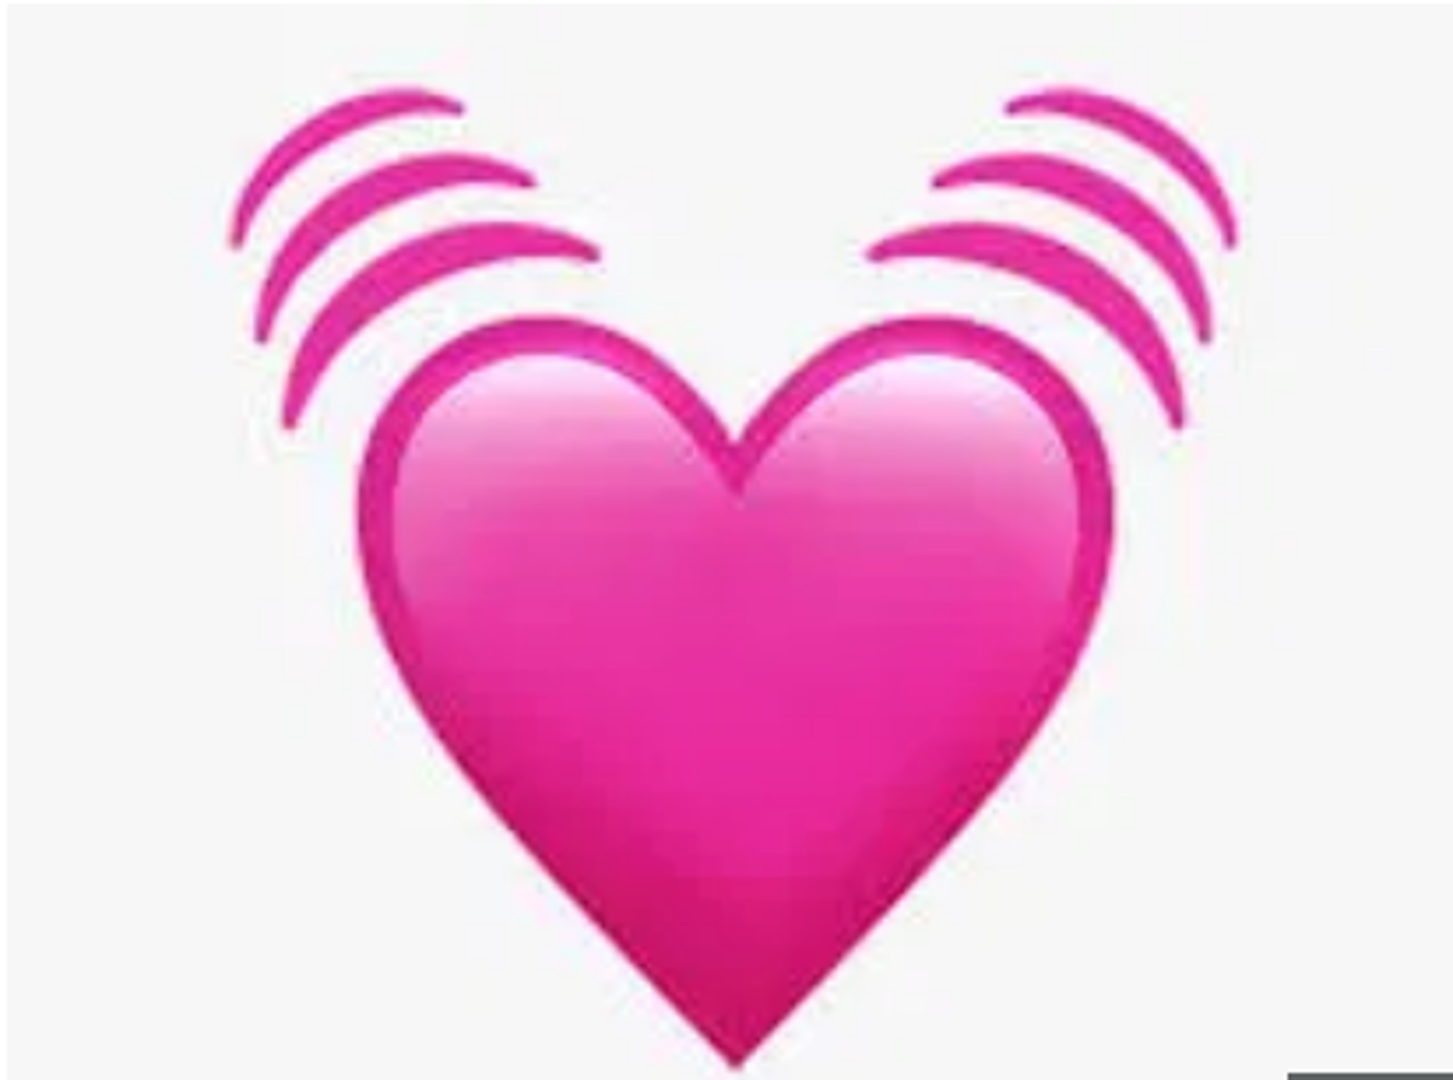 Srce koje kuca ružičaste boje pokazuje intenzivniju ljubav od klasičnog crvenog. Koriste ga jako zaljubljeni ljudi jer simbolizira leptiriće u trbuhu.